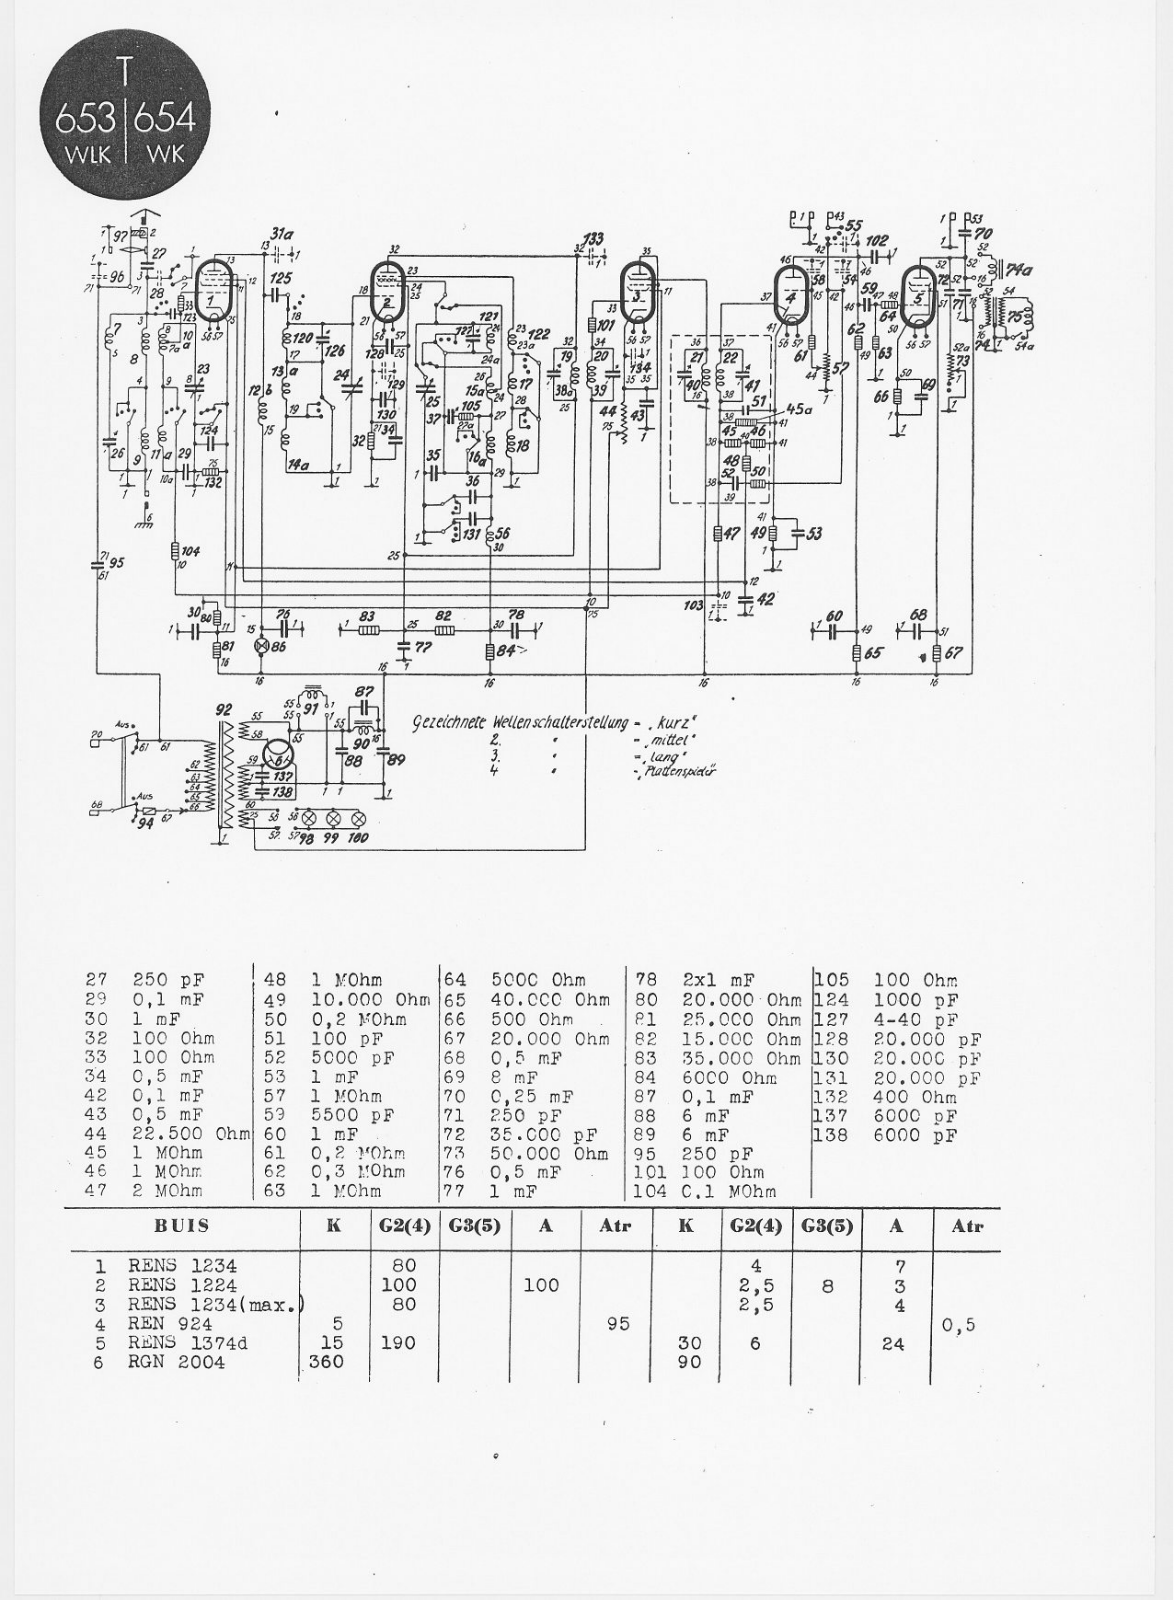 Telefunken 654-WLK, 653-WLK Schematic